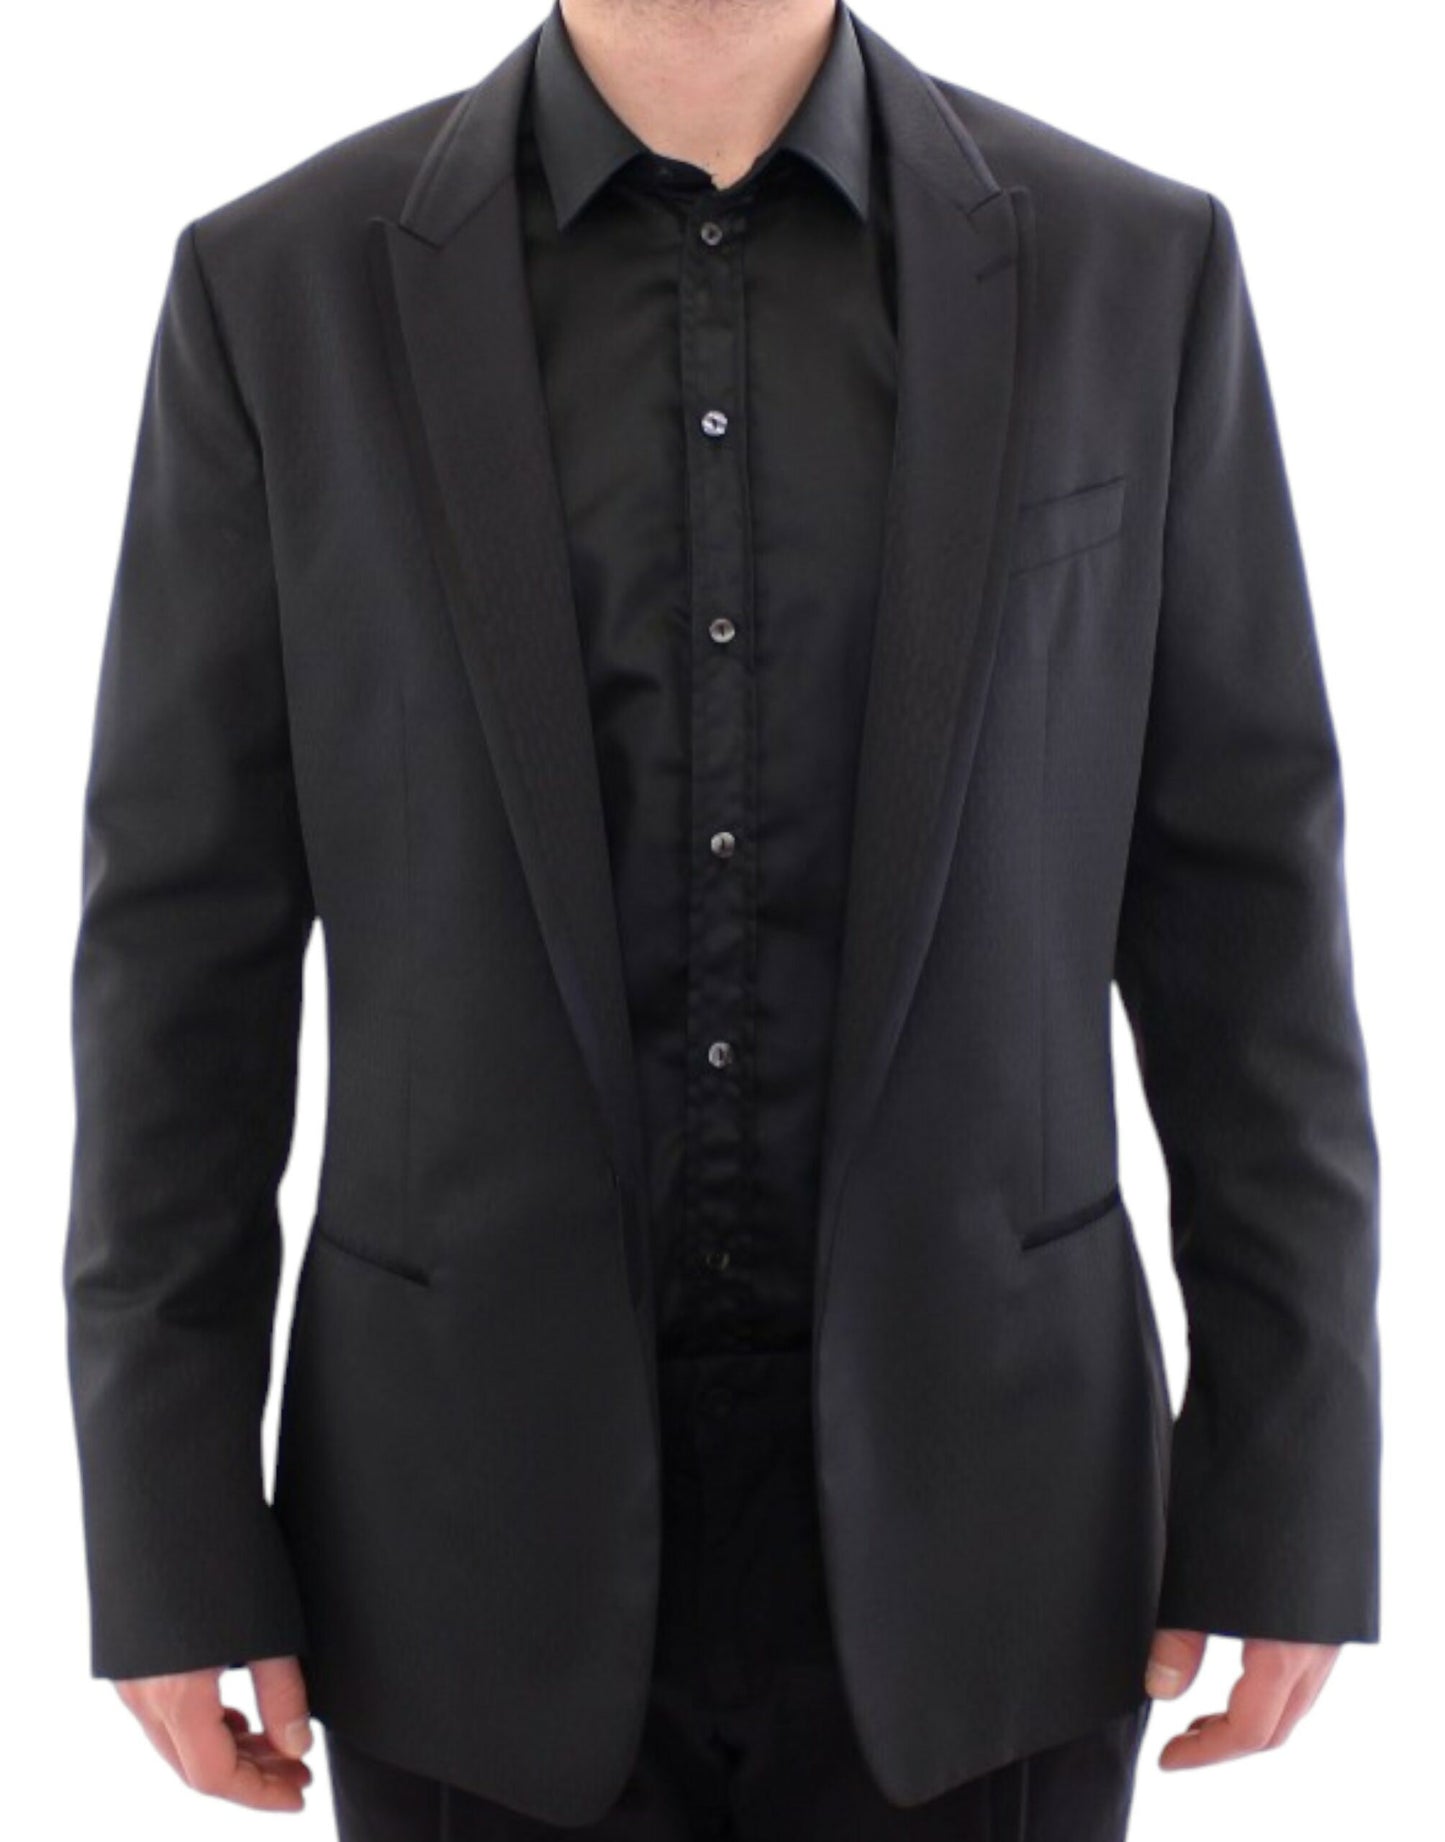 Elegant Black Martini Slim Blazer Jacket